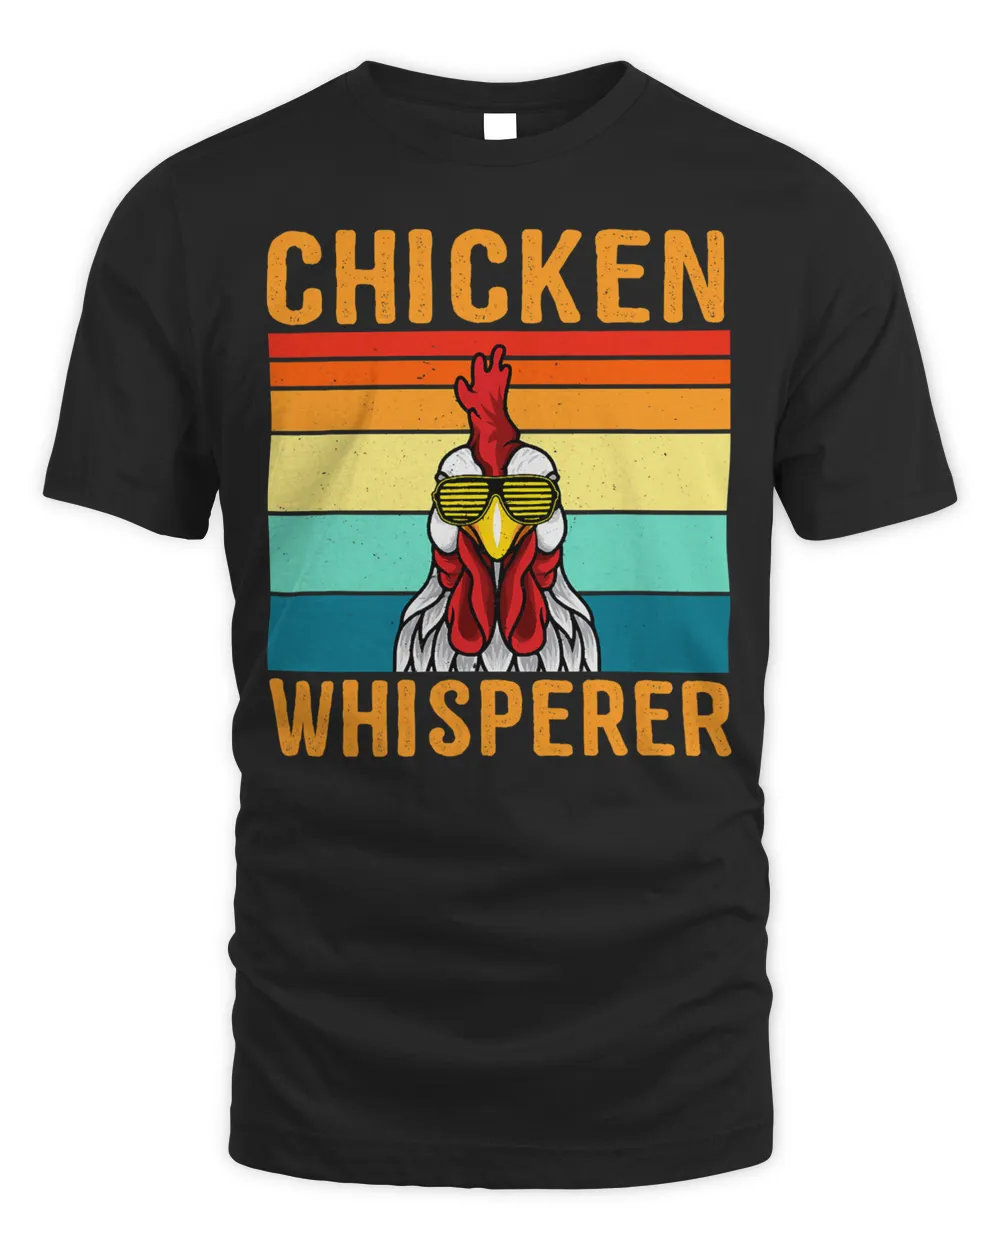 Chicken Chick Whisperer funny design dor women men kids 168 Rooster Hen